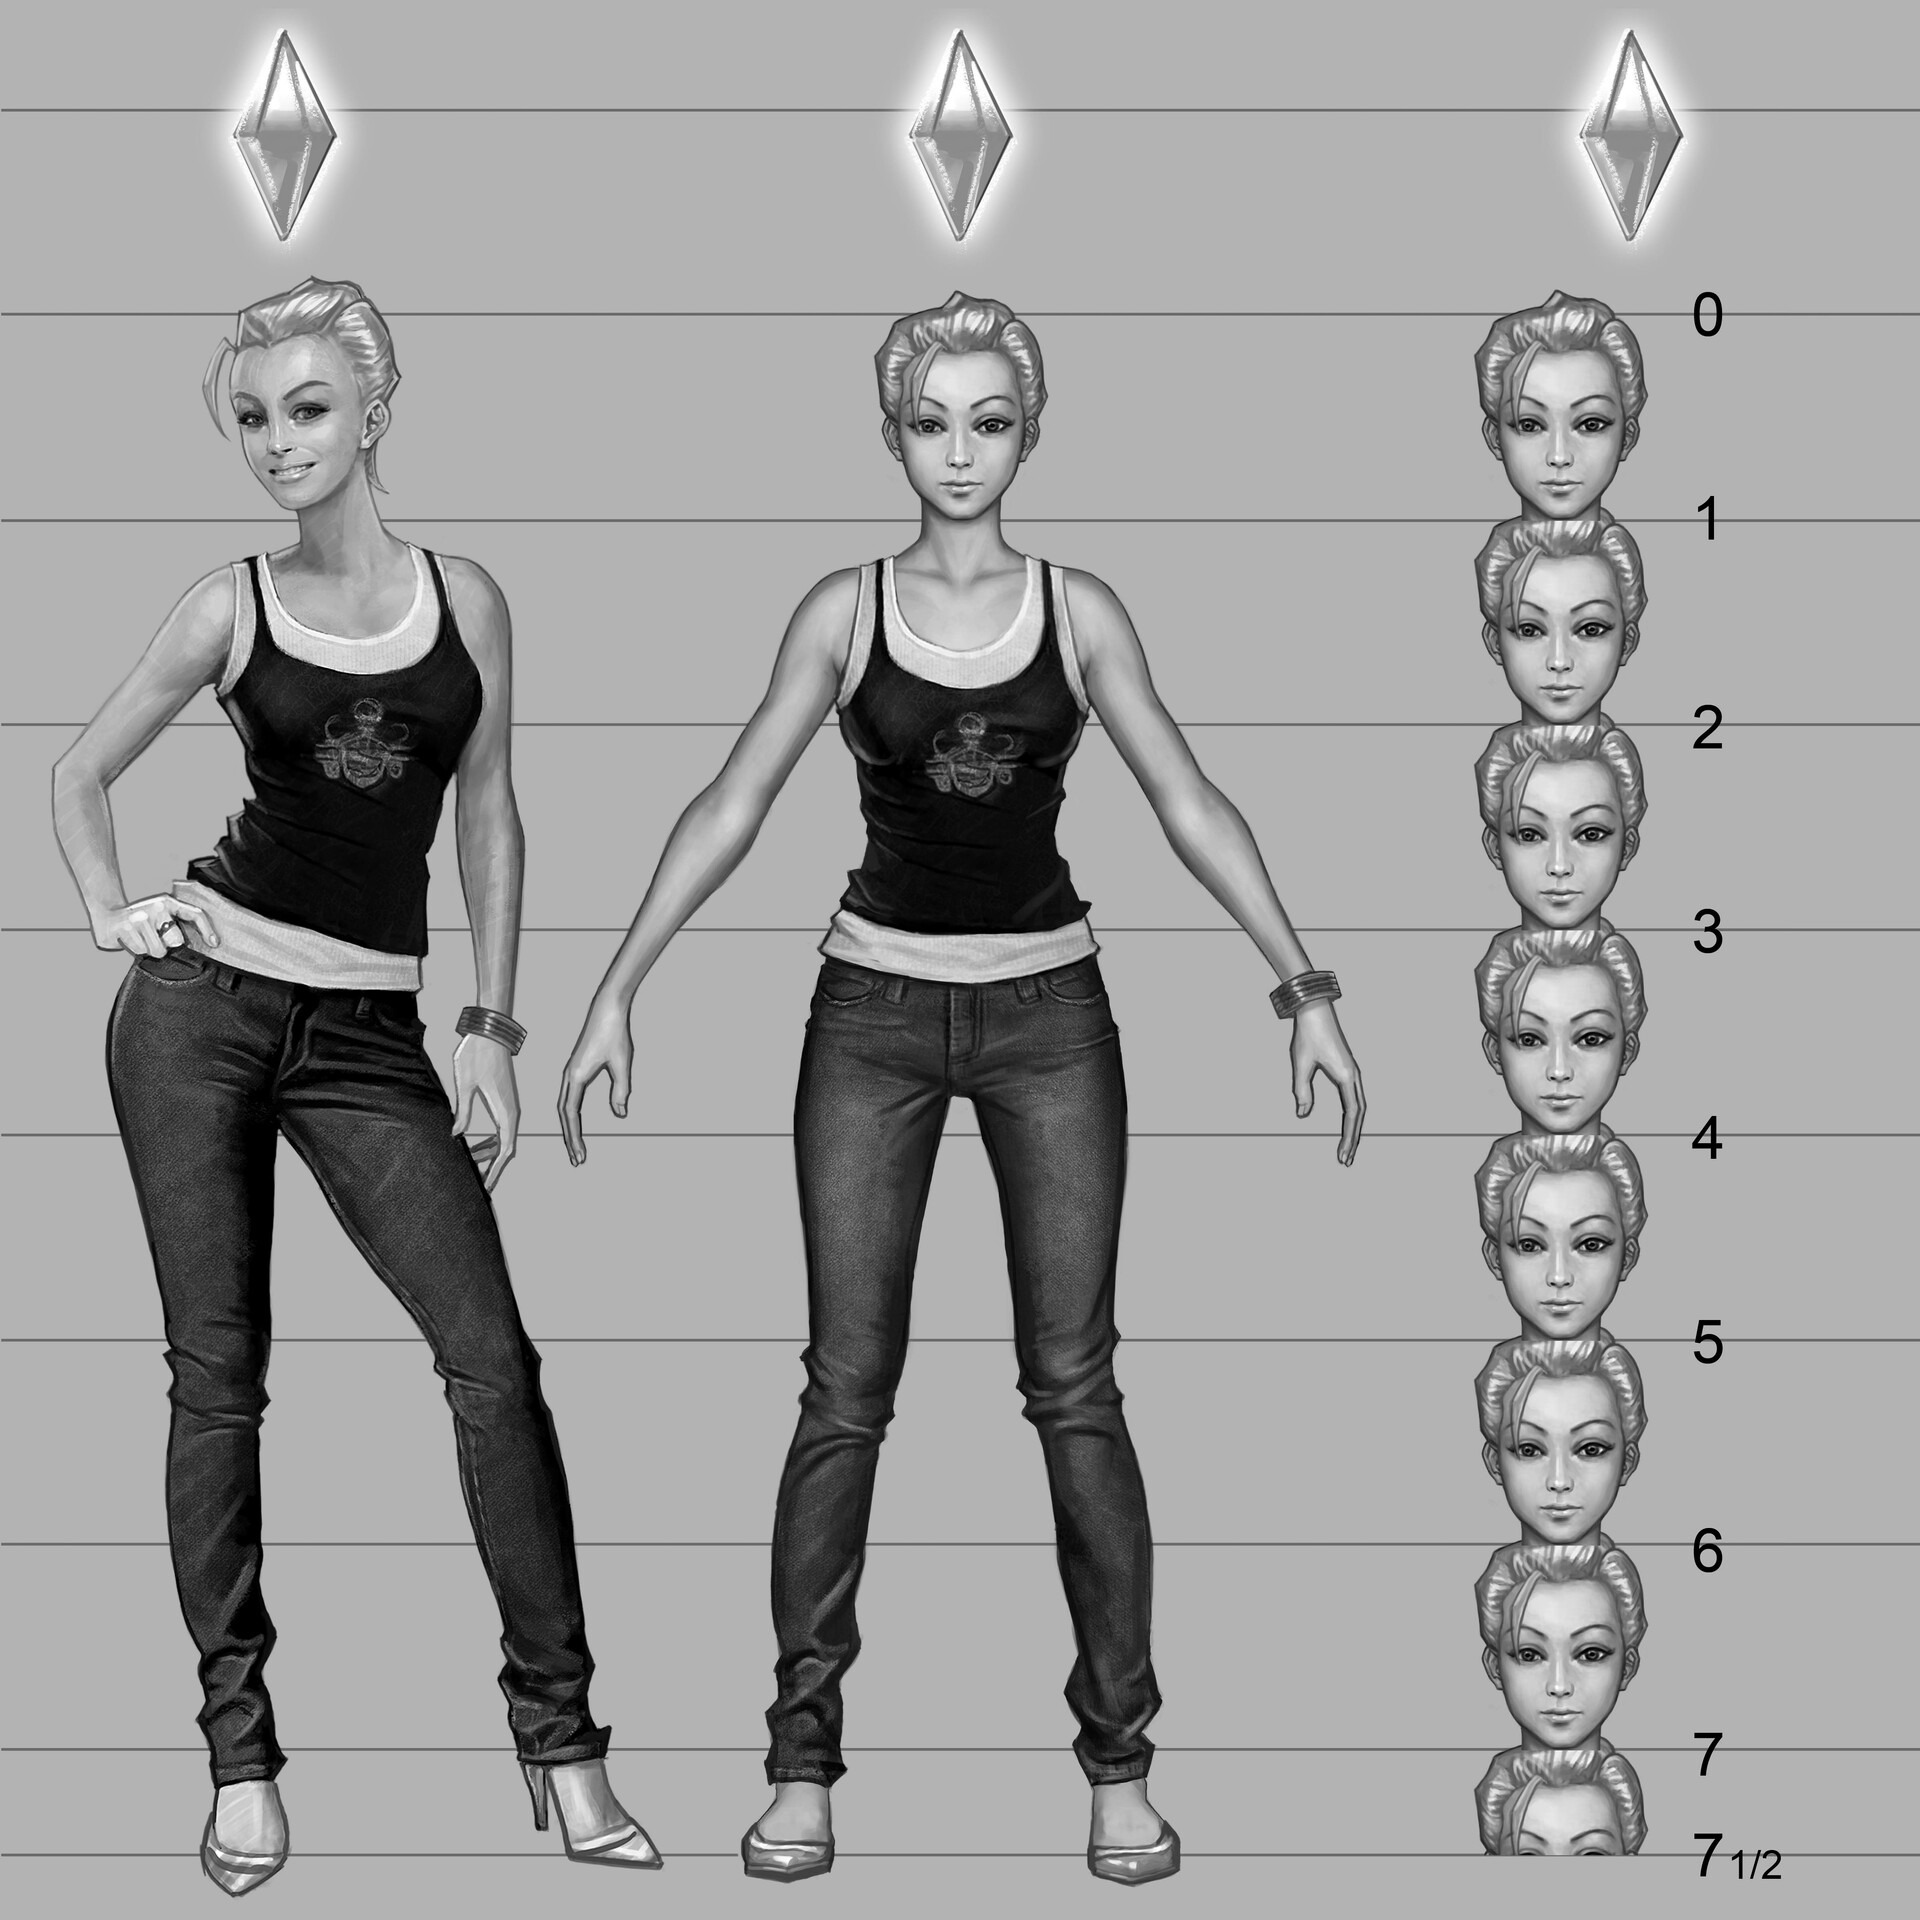 The Sims 4 Protótipo: Novas Imagens Revelam Primeiros Estilos de Sims